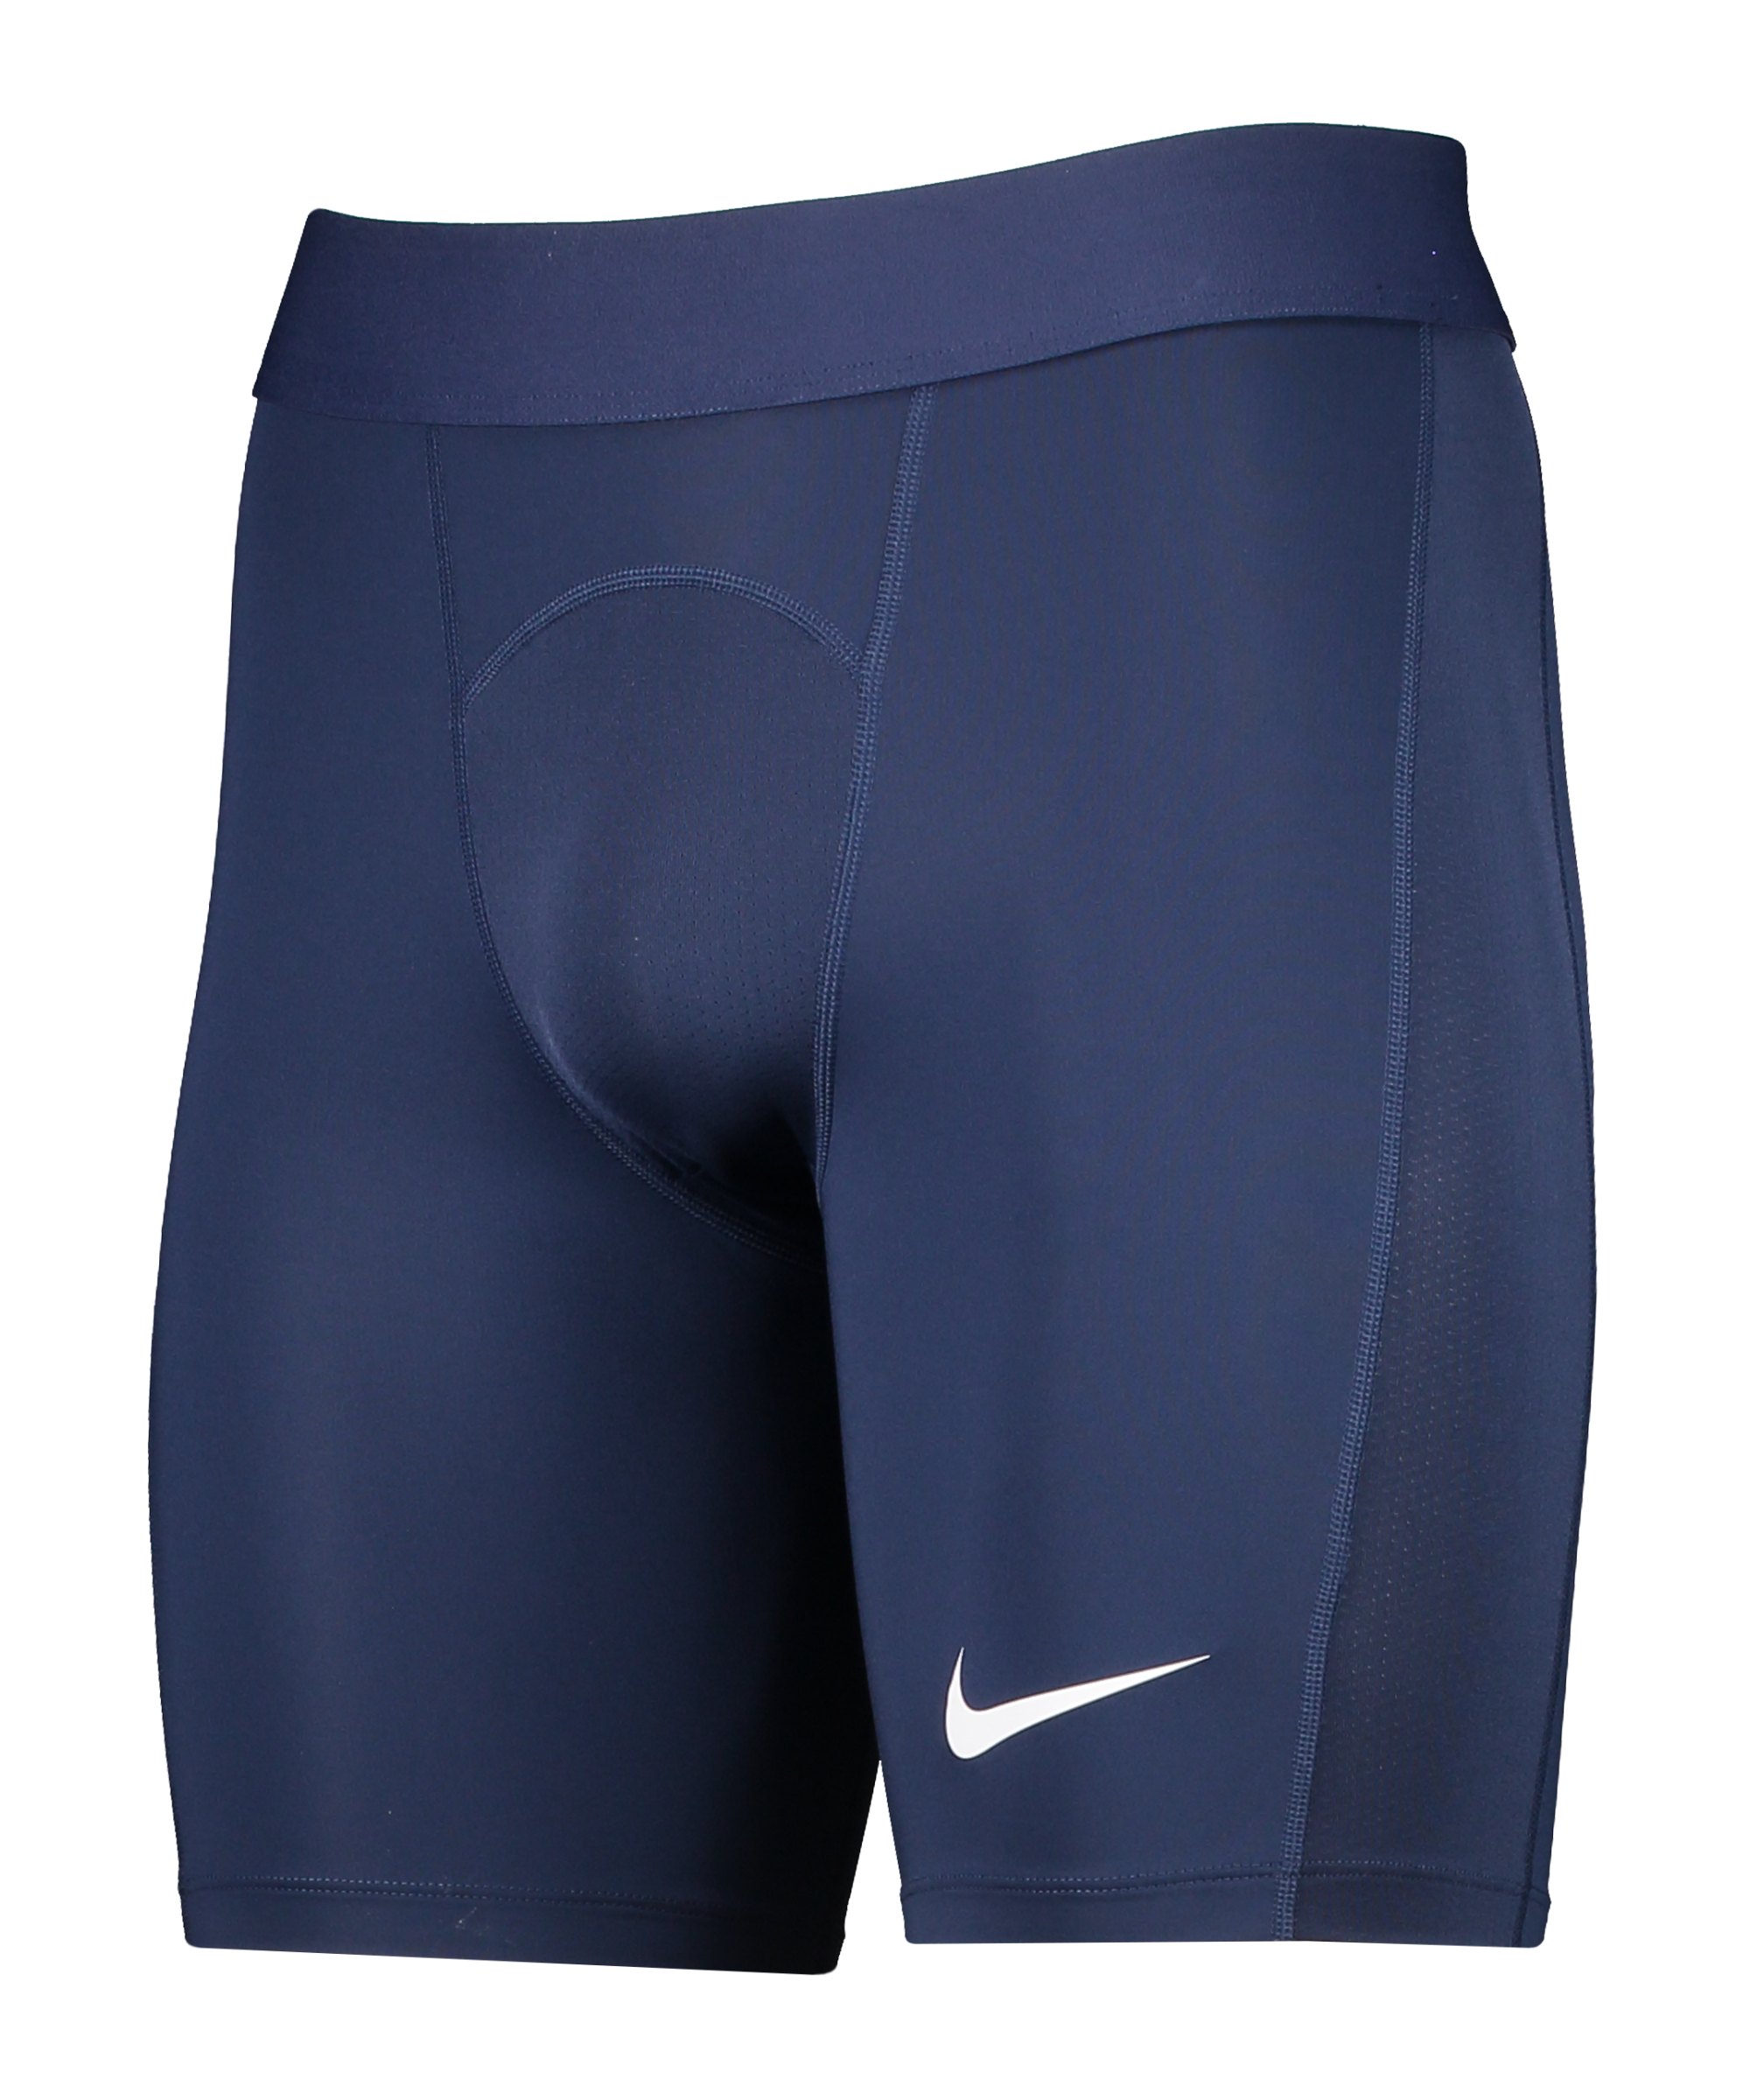 Nike Pro Strike Short Blau Weiss F410 - blau